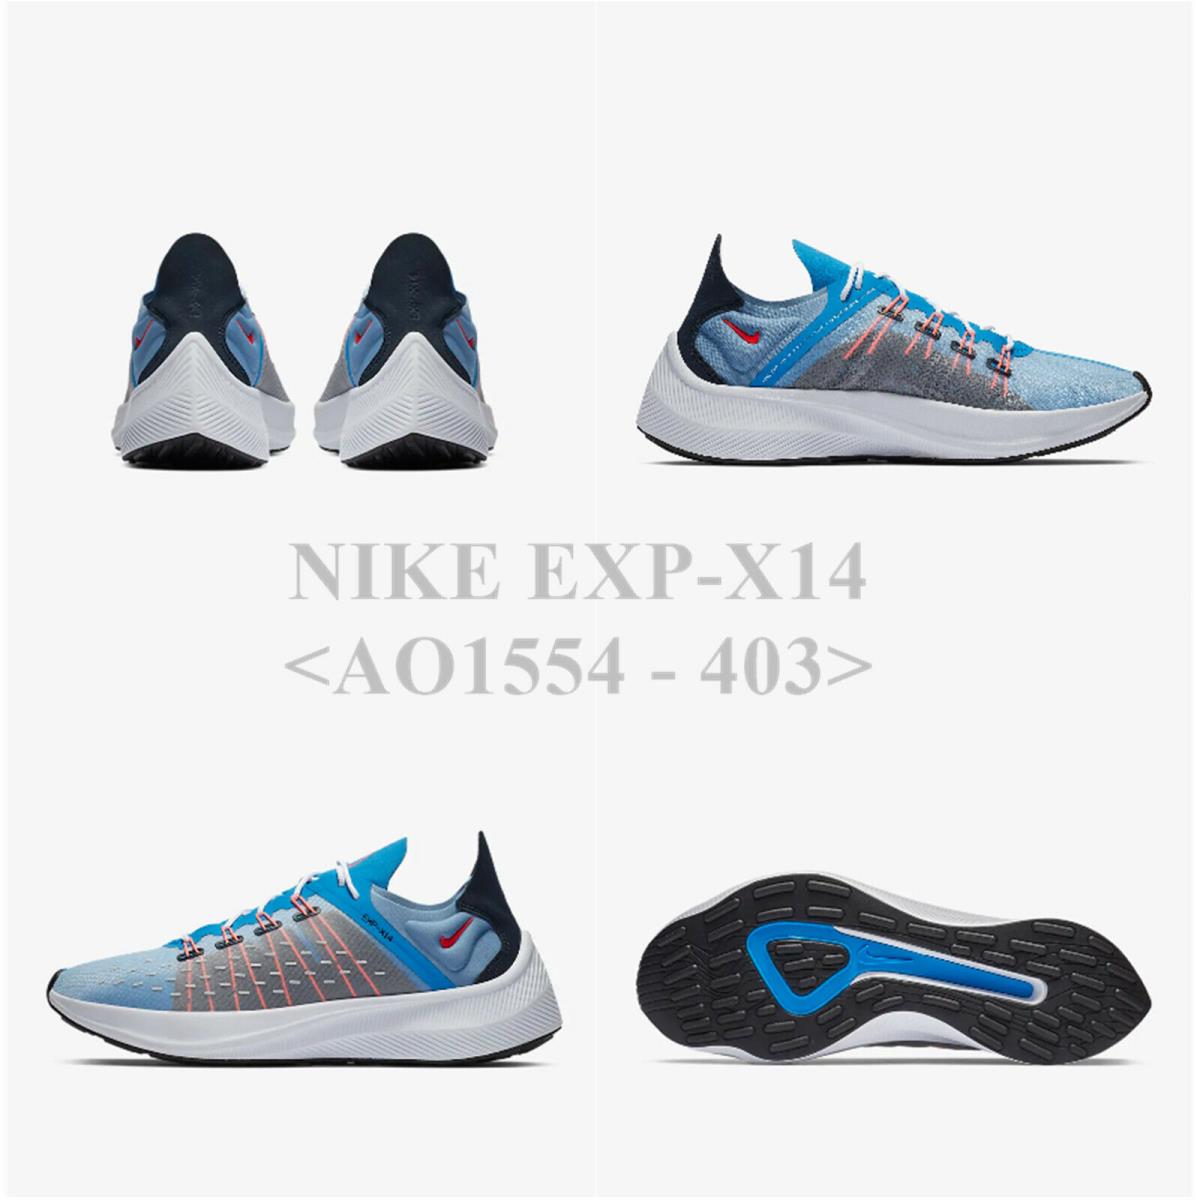 Nike EXP-X14 <AO1554 - 403>.Men`s Running Shoe with Box